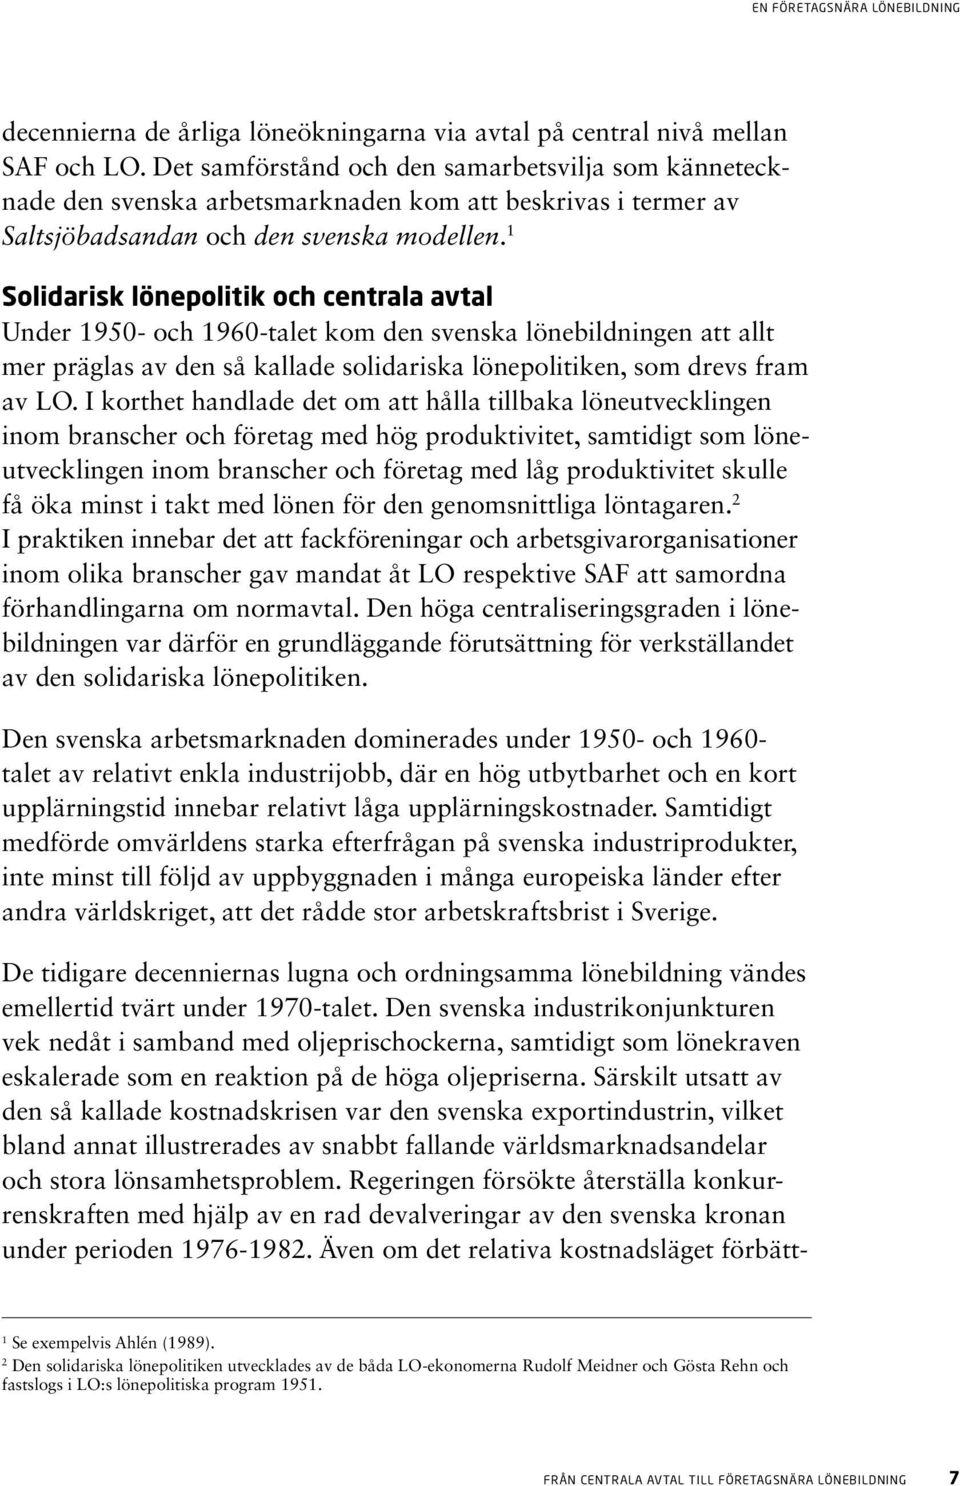 1 Solidarisk lönepolitik och centrala avtal Under 1950- och 1960-talet kom den svenska lönebildningen att allt mer präglas av den så kallade solidariska lönepolitiken, som drevs fram av LO.